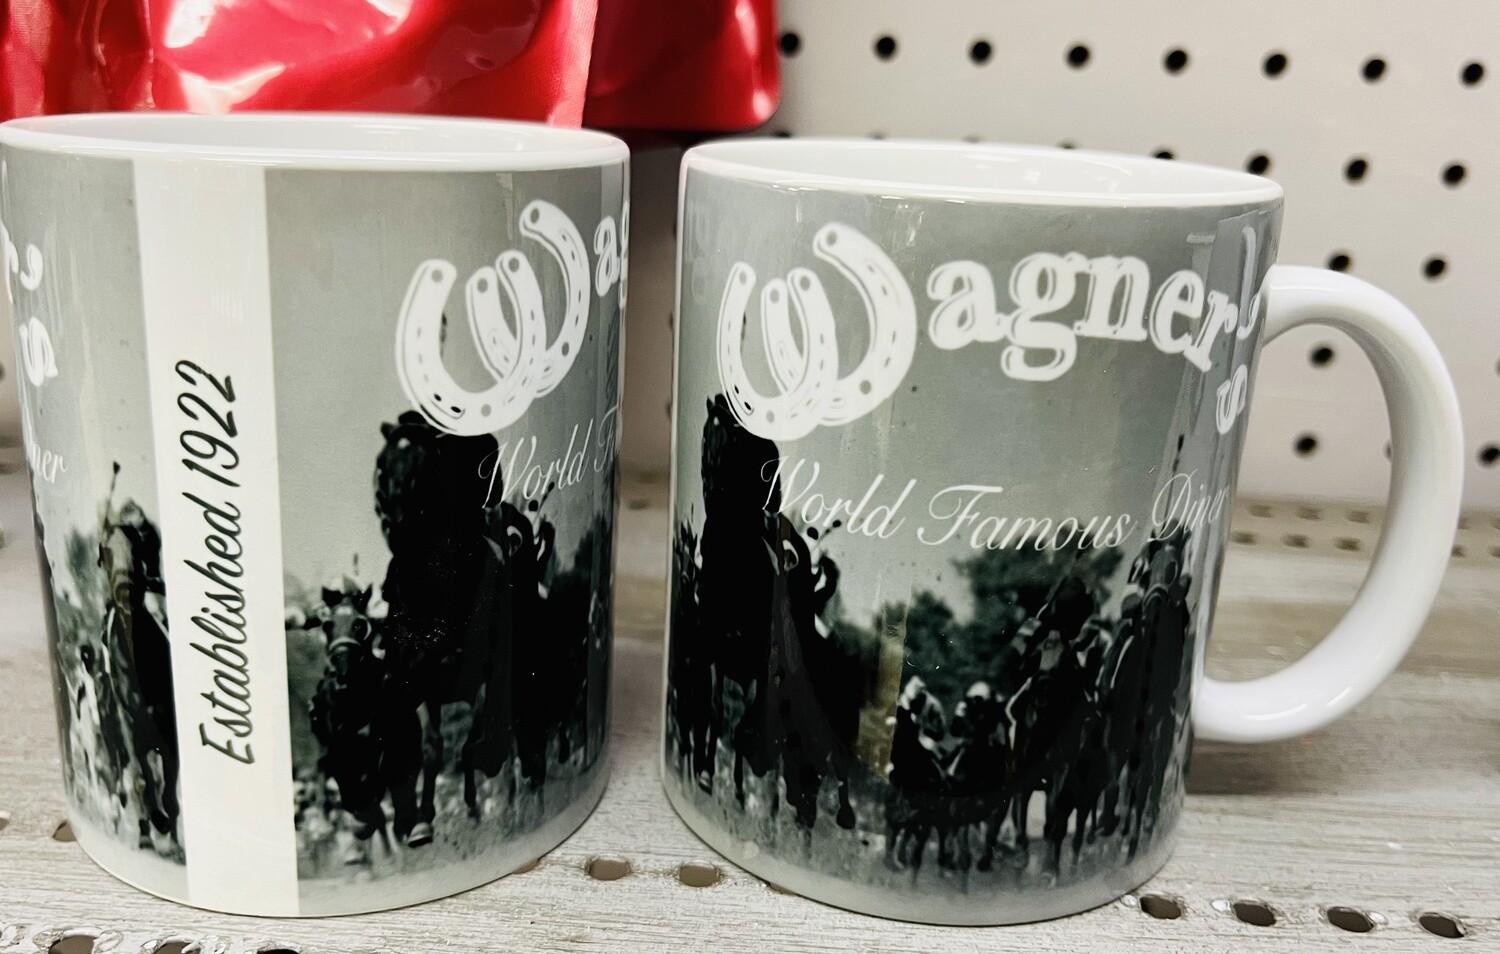 Wagner's 1922 Mug